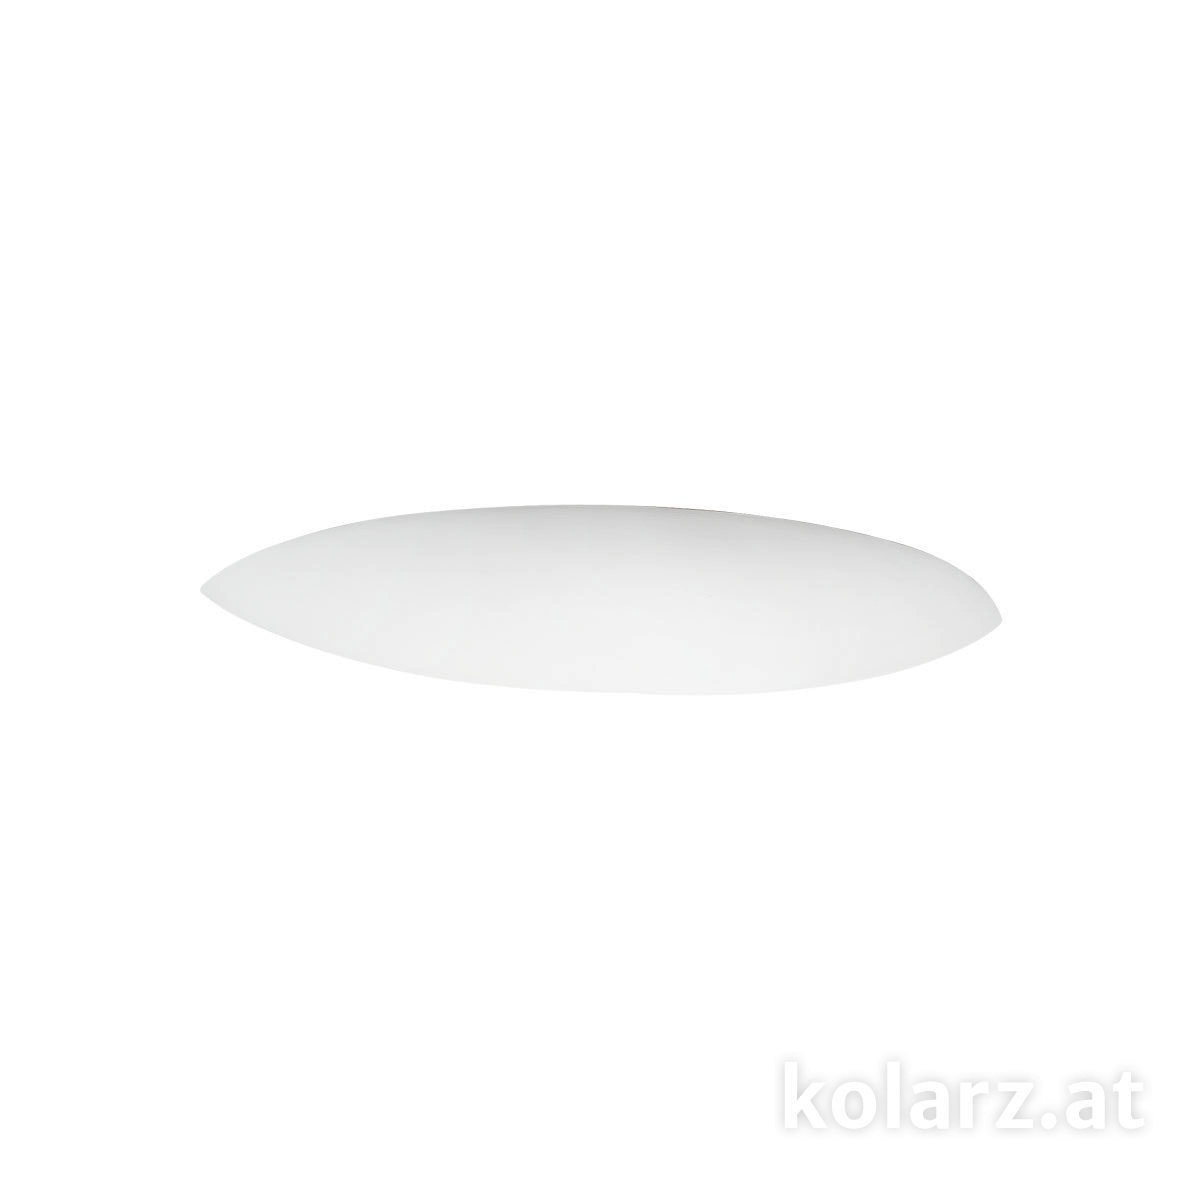 Klassische Wandleuchten & Wandlampen fürs Esszimmer von KOLARZ Leuchten Elegance Wandleuchte 219.60.1